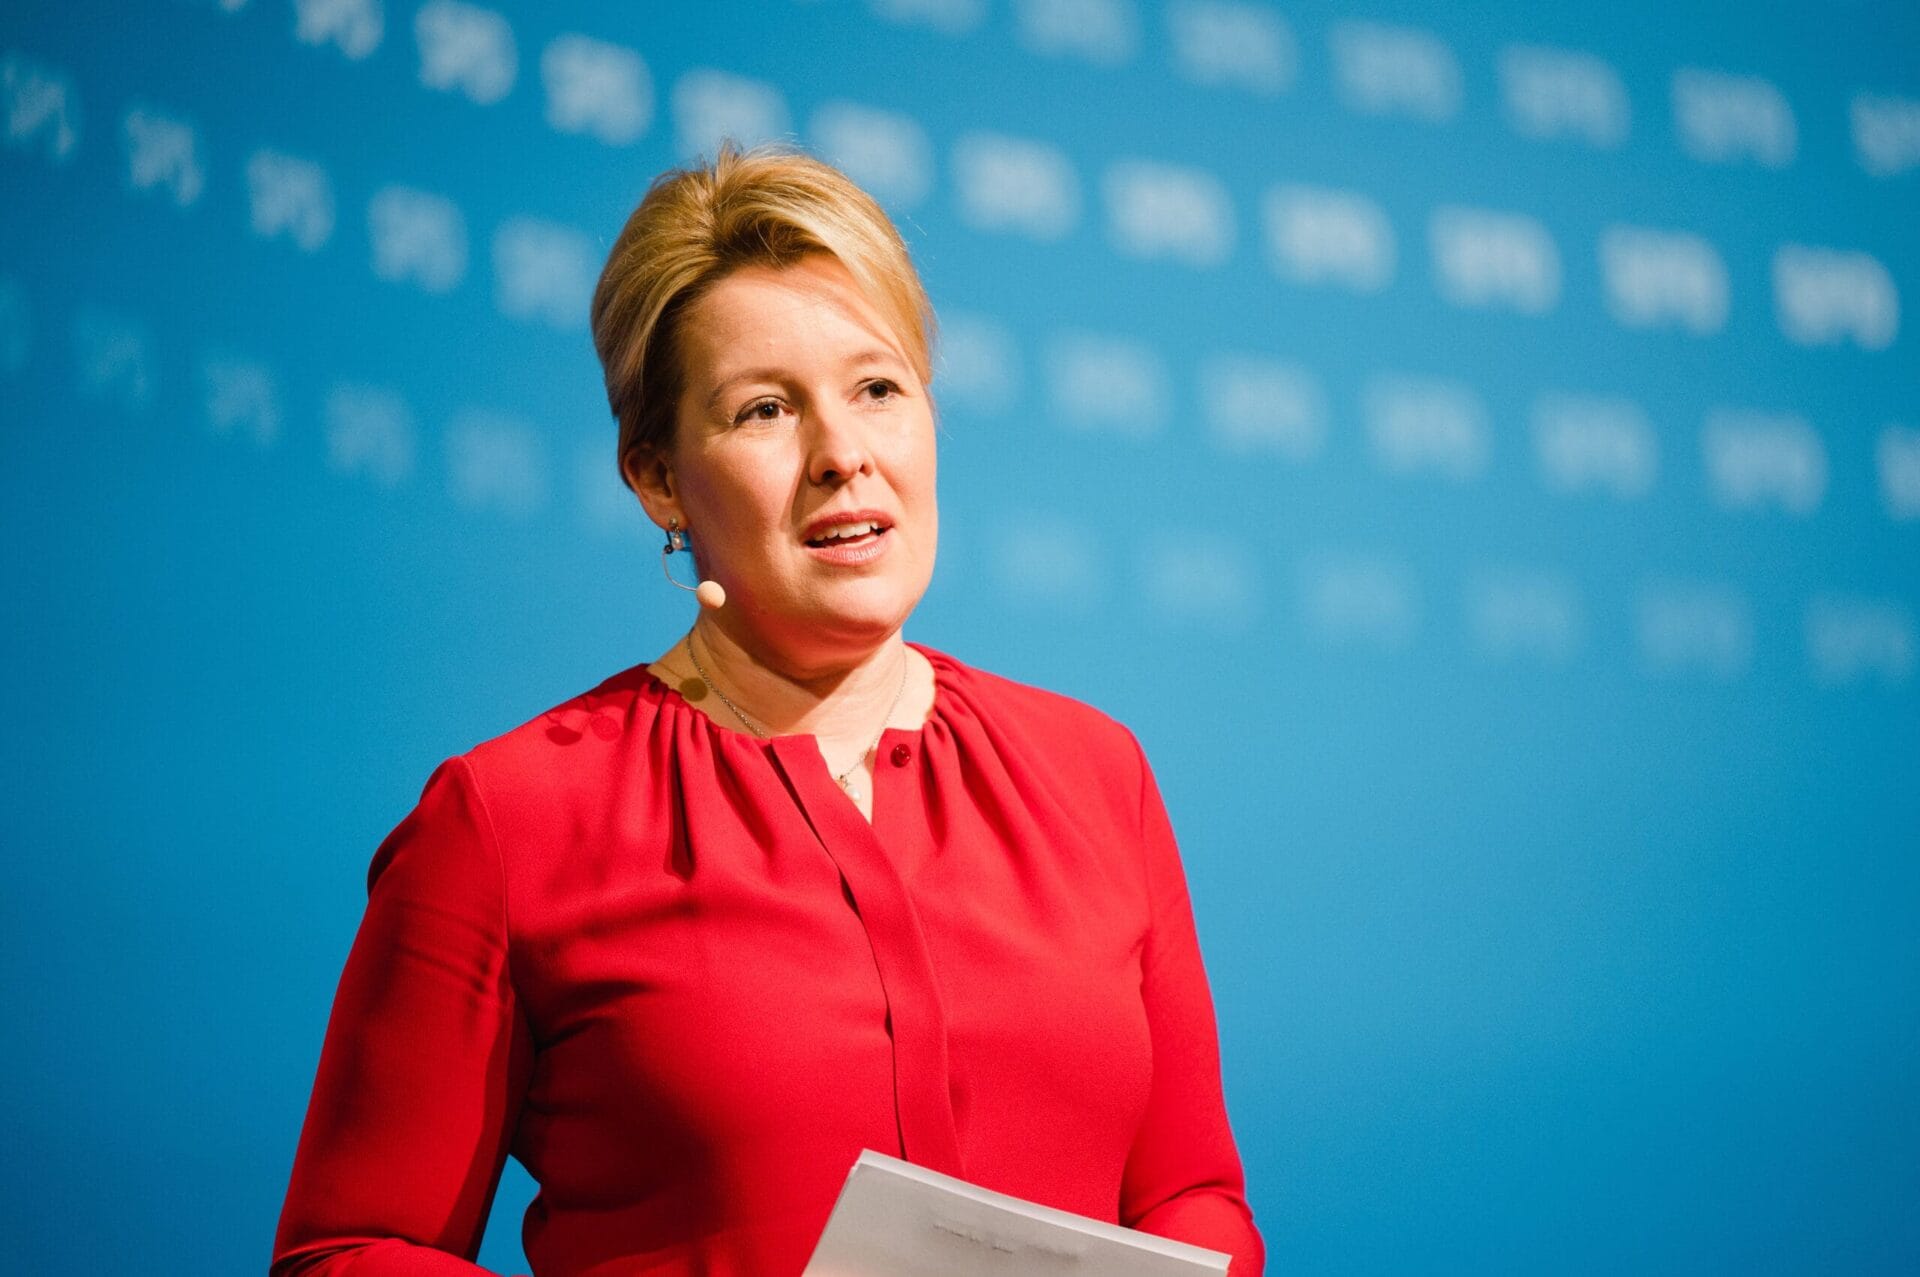 Franziska Giffey kandidiert beim hybriden Landesparteitag der SPD Berlin